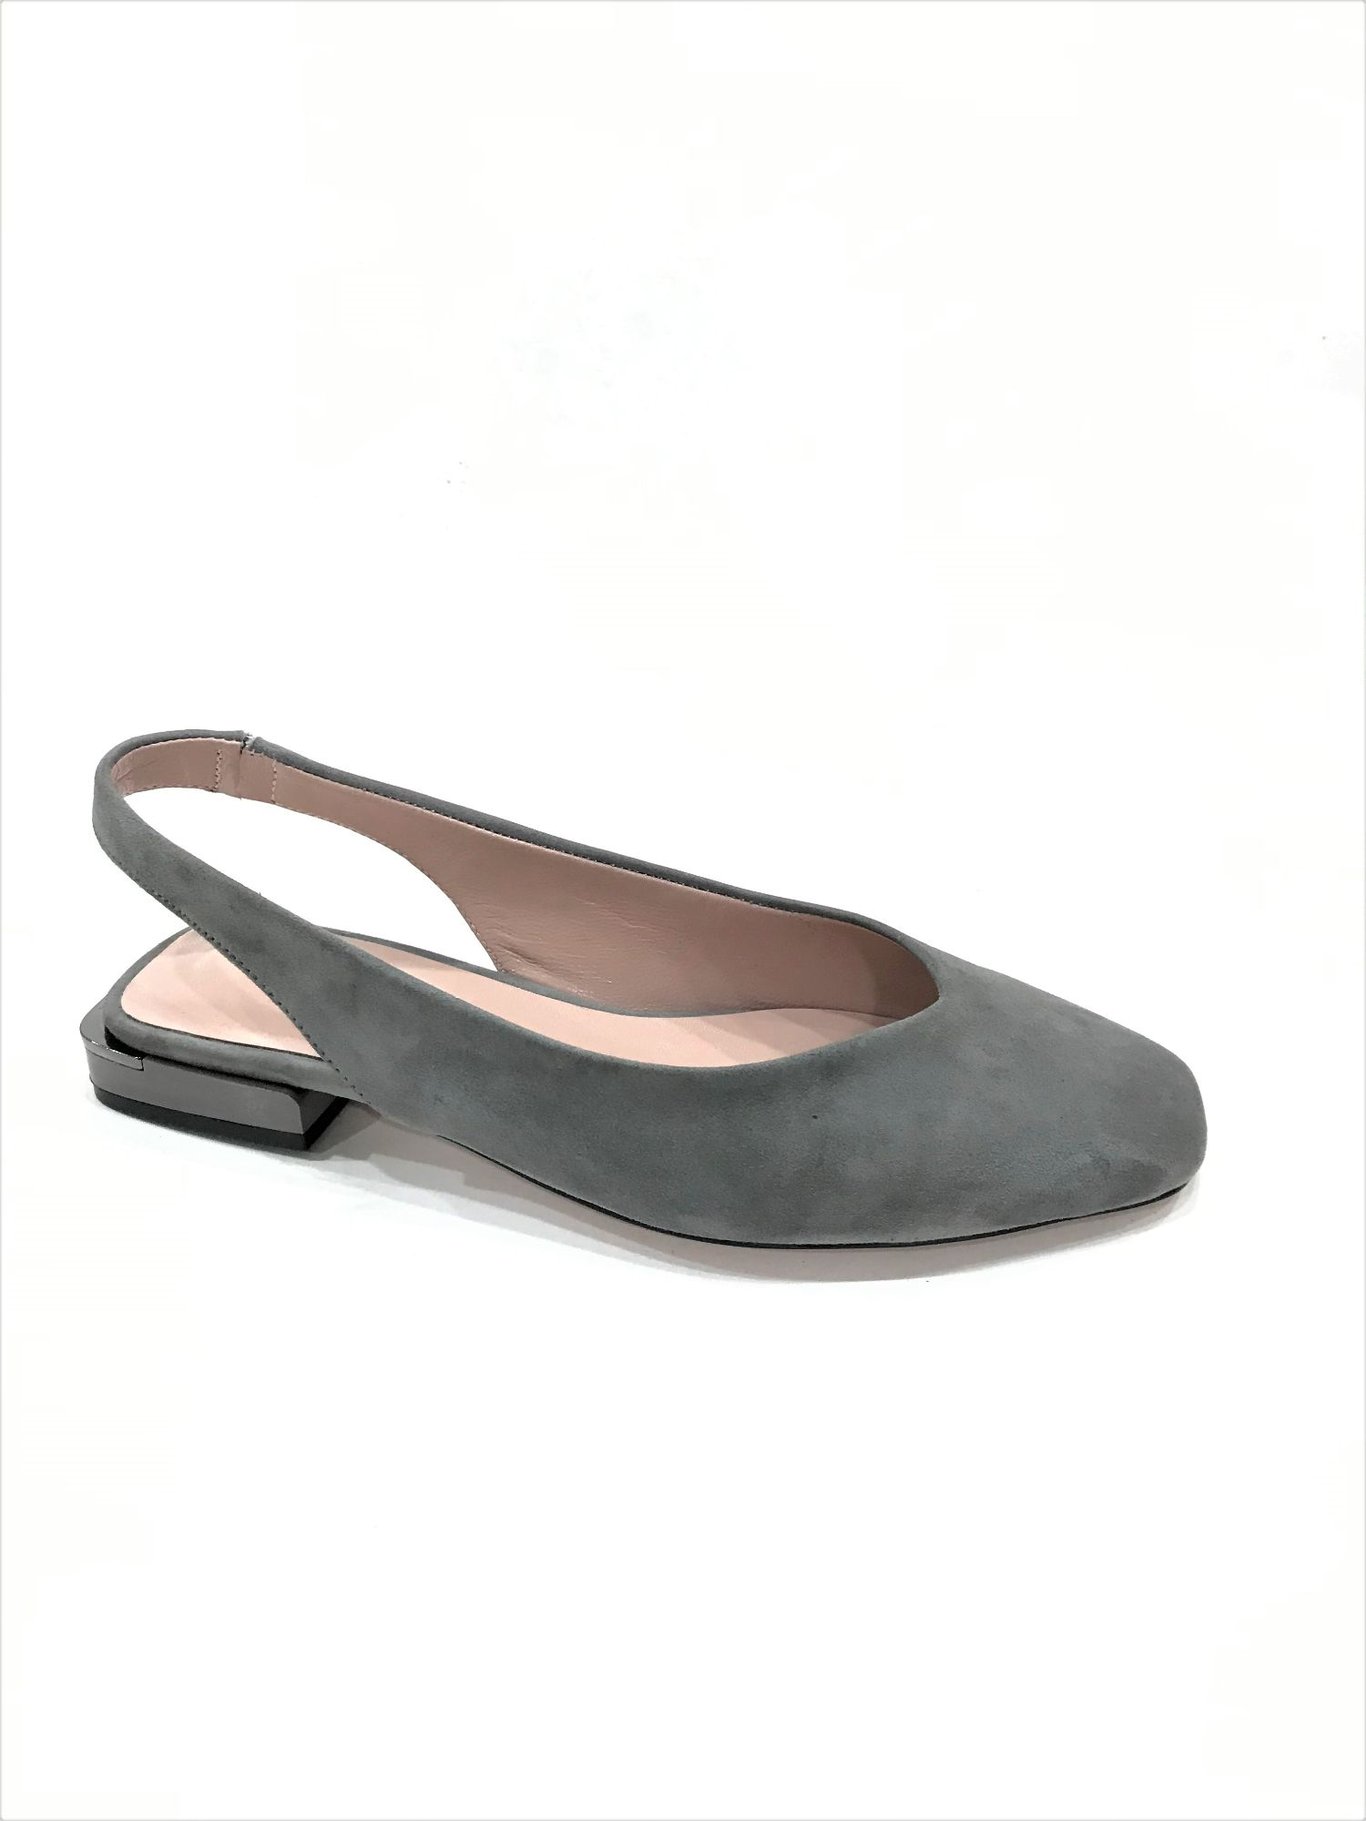 grey suede comfortable women sandals